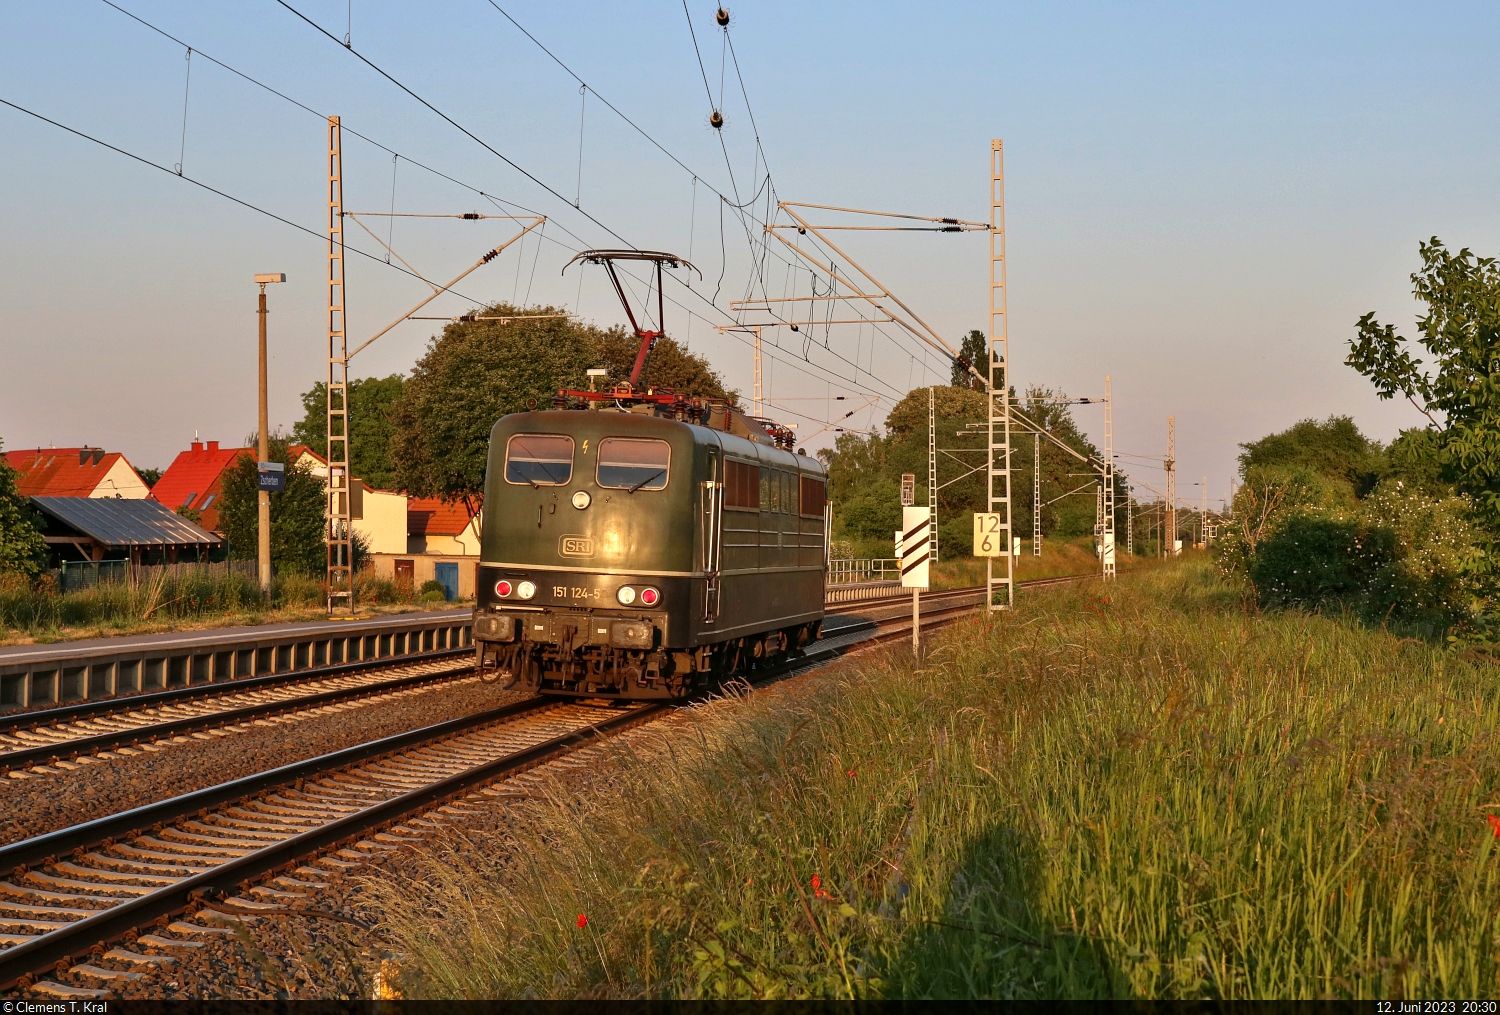 Je später der Abend, desto exotischer die Fänge. 151 124-5 fährt am Hp Zscherben der Sonne davon. Als Tfzf geht es auf Halle (Saale) zu.

🧰 SRI Rail Invest GmbH, vermietet an Flex Bahndienstleistungen GmbH
🕓 12.6.2023 | 20:30 Uhr